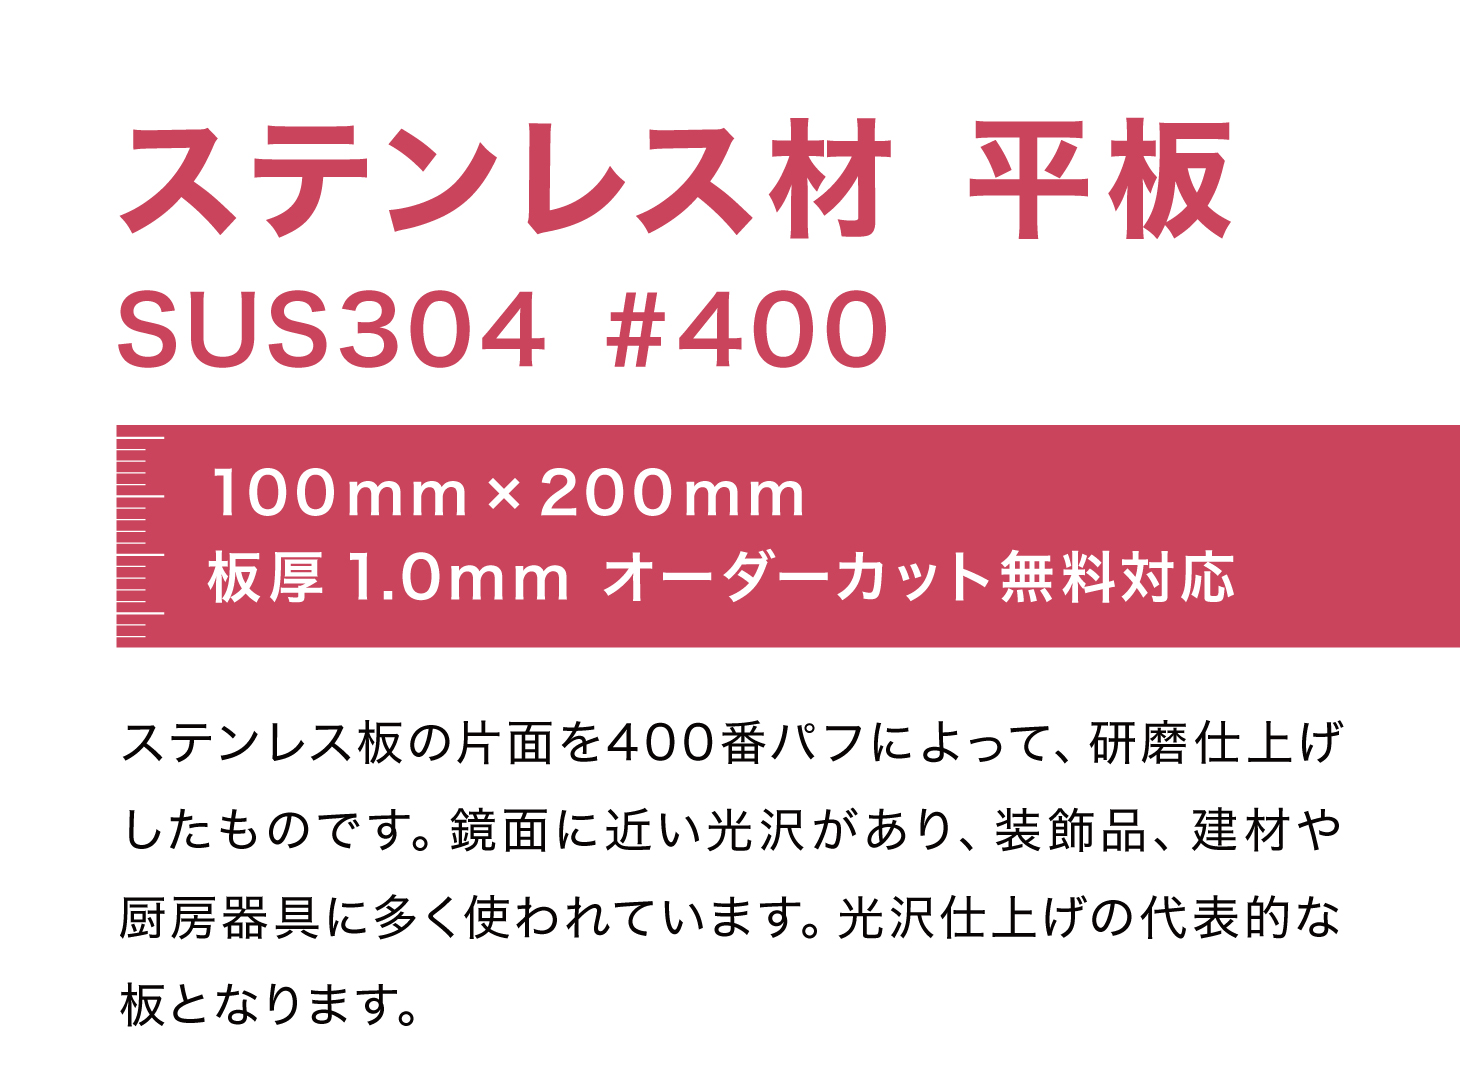 ステンレス 板 100mm×200mm t=1.0 mm SUS304 #400 DIY ステン板 平板